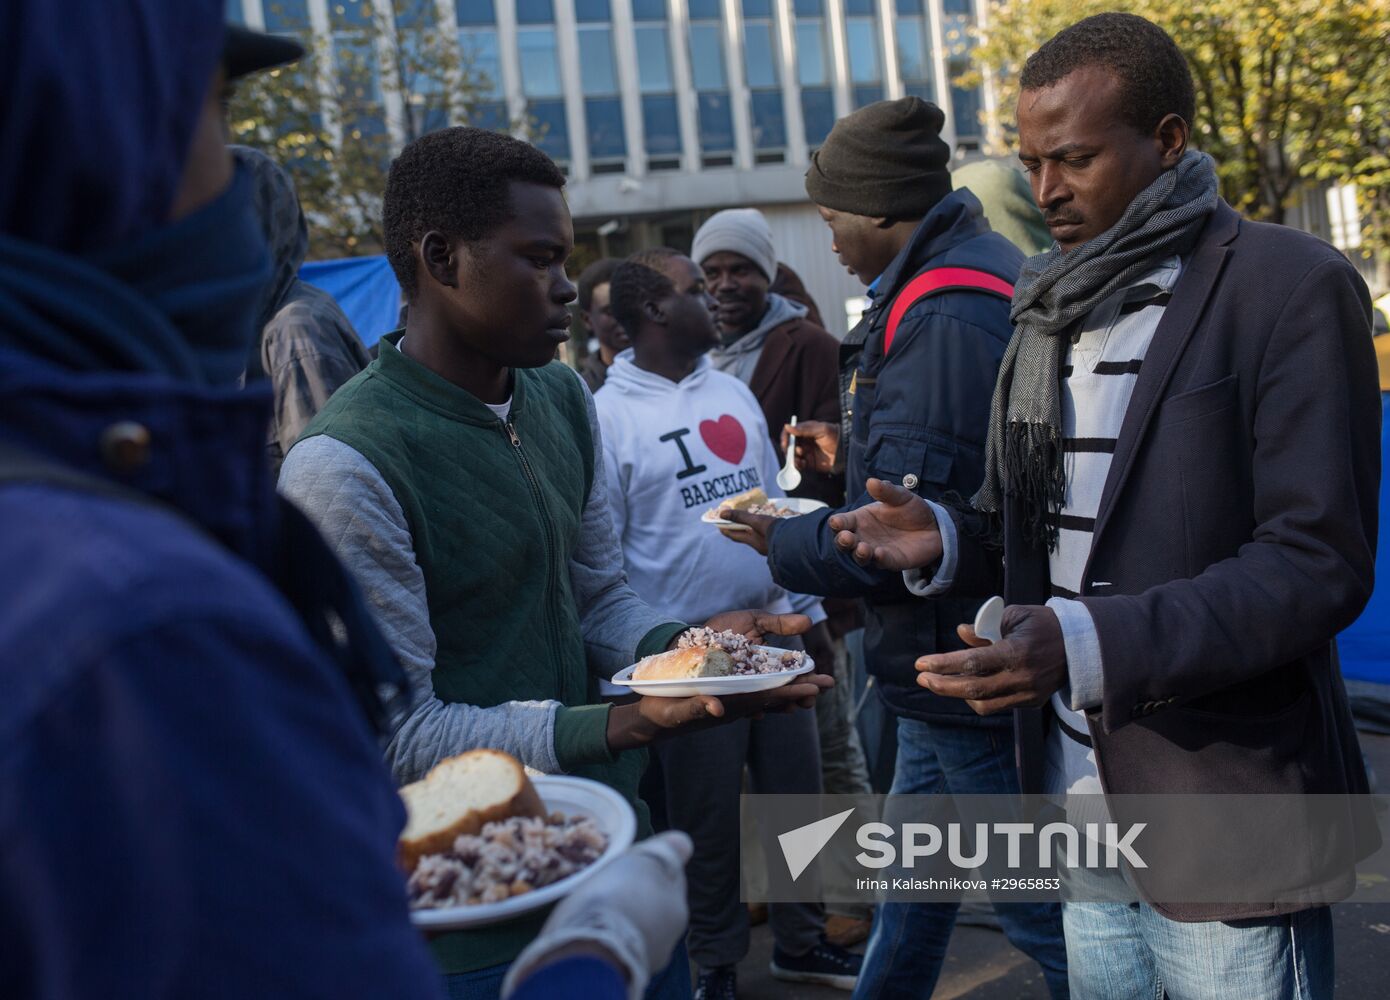 Situation at a Paris refugee camp